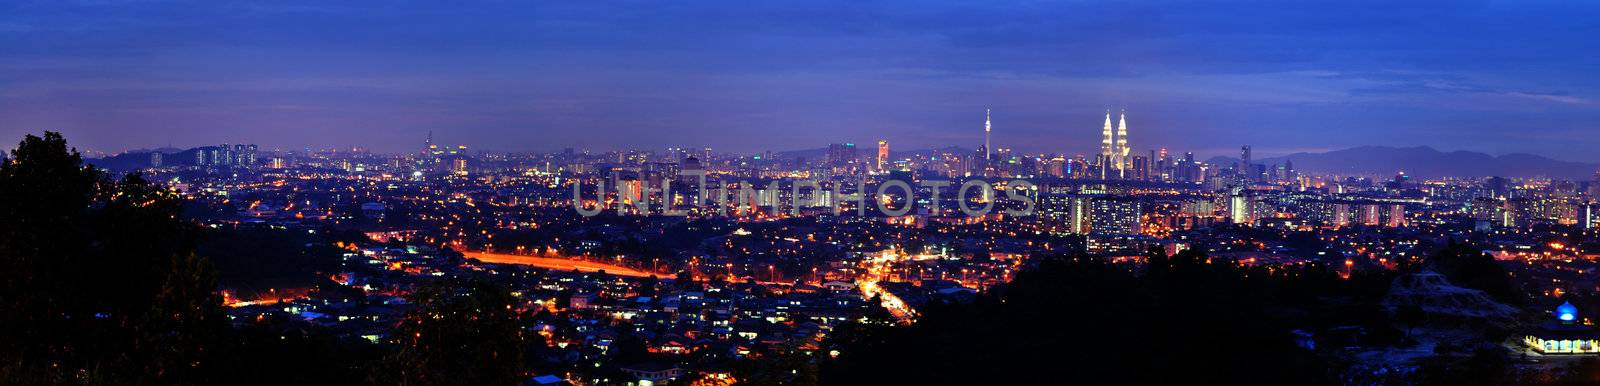 Panorama Kuala Lumpur. by szefei